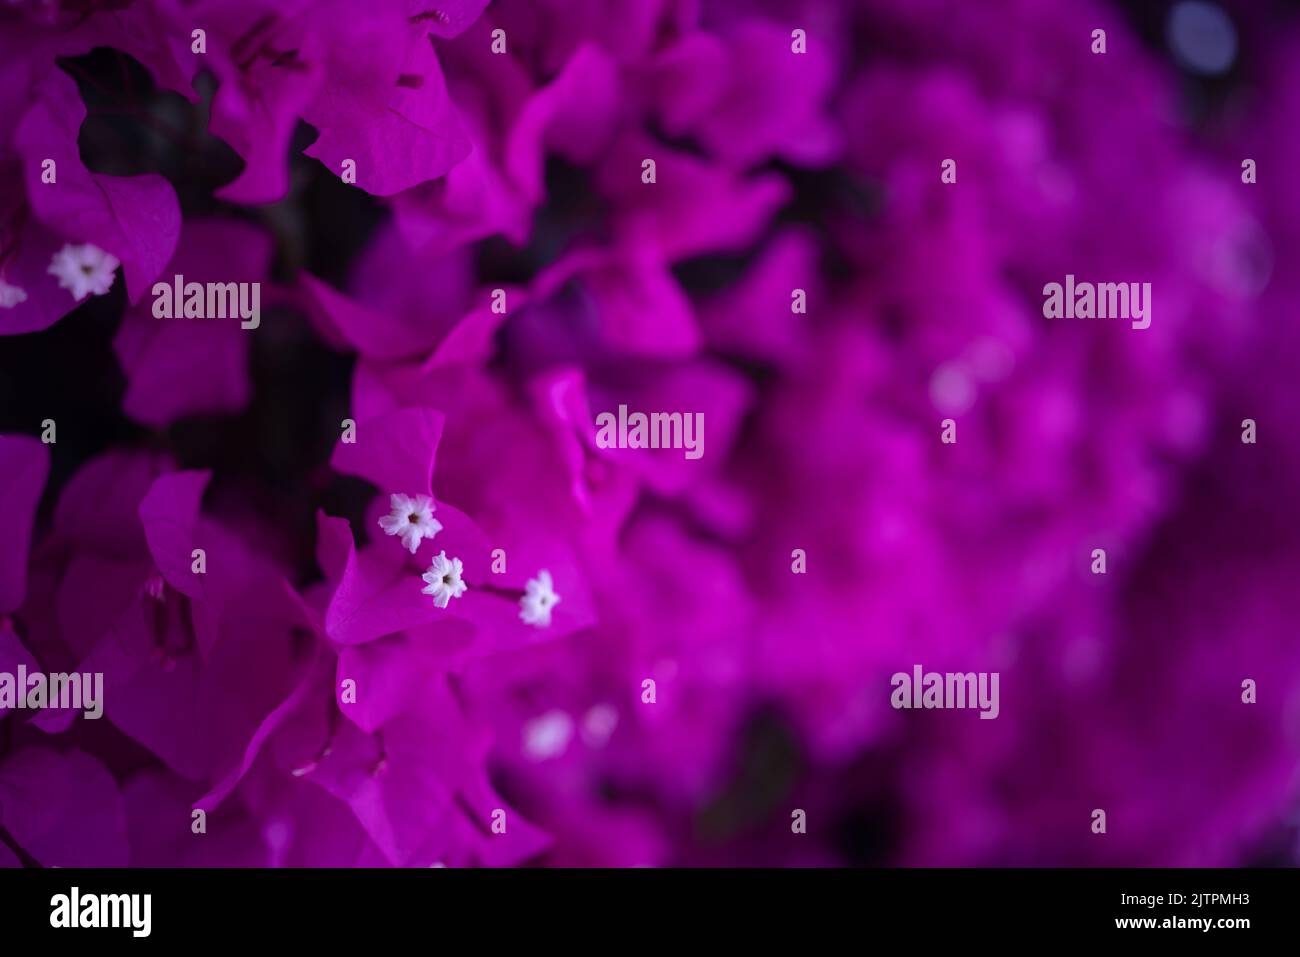 Photo principalement floue de fleurs bougainvilliers violets sur fond noir Banque D'Images